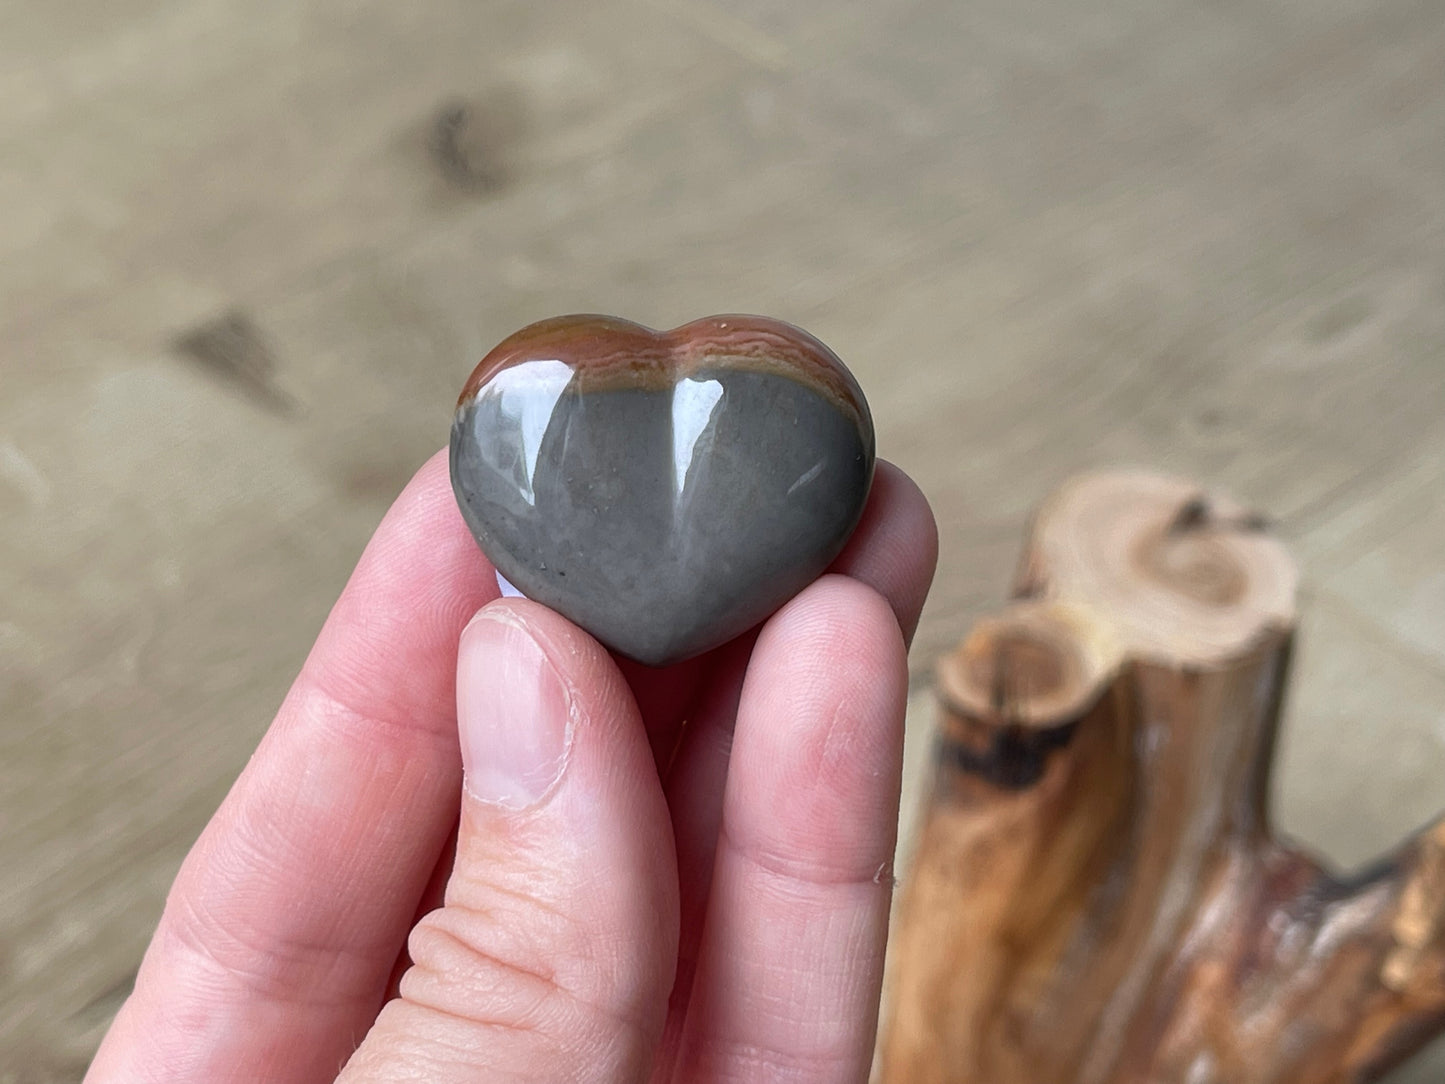 Polychrome jasper gem grade hearts | Madagascar